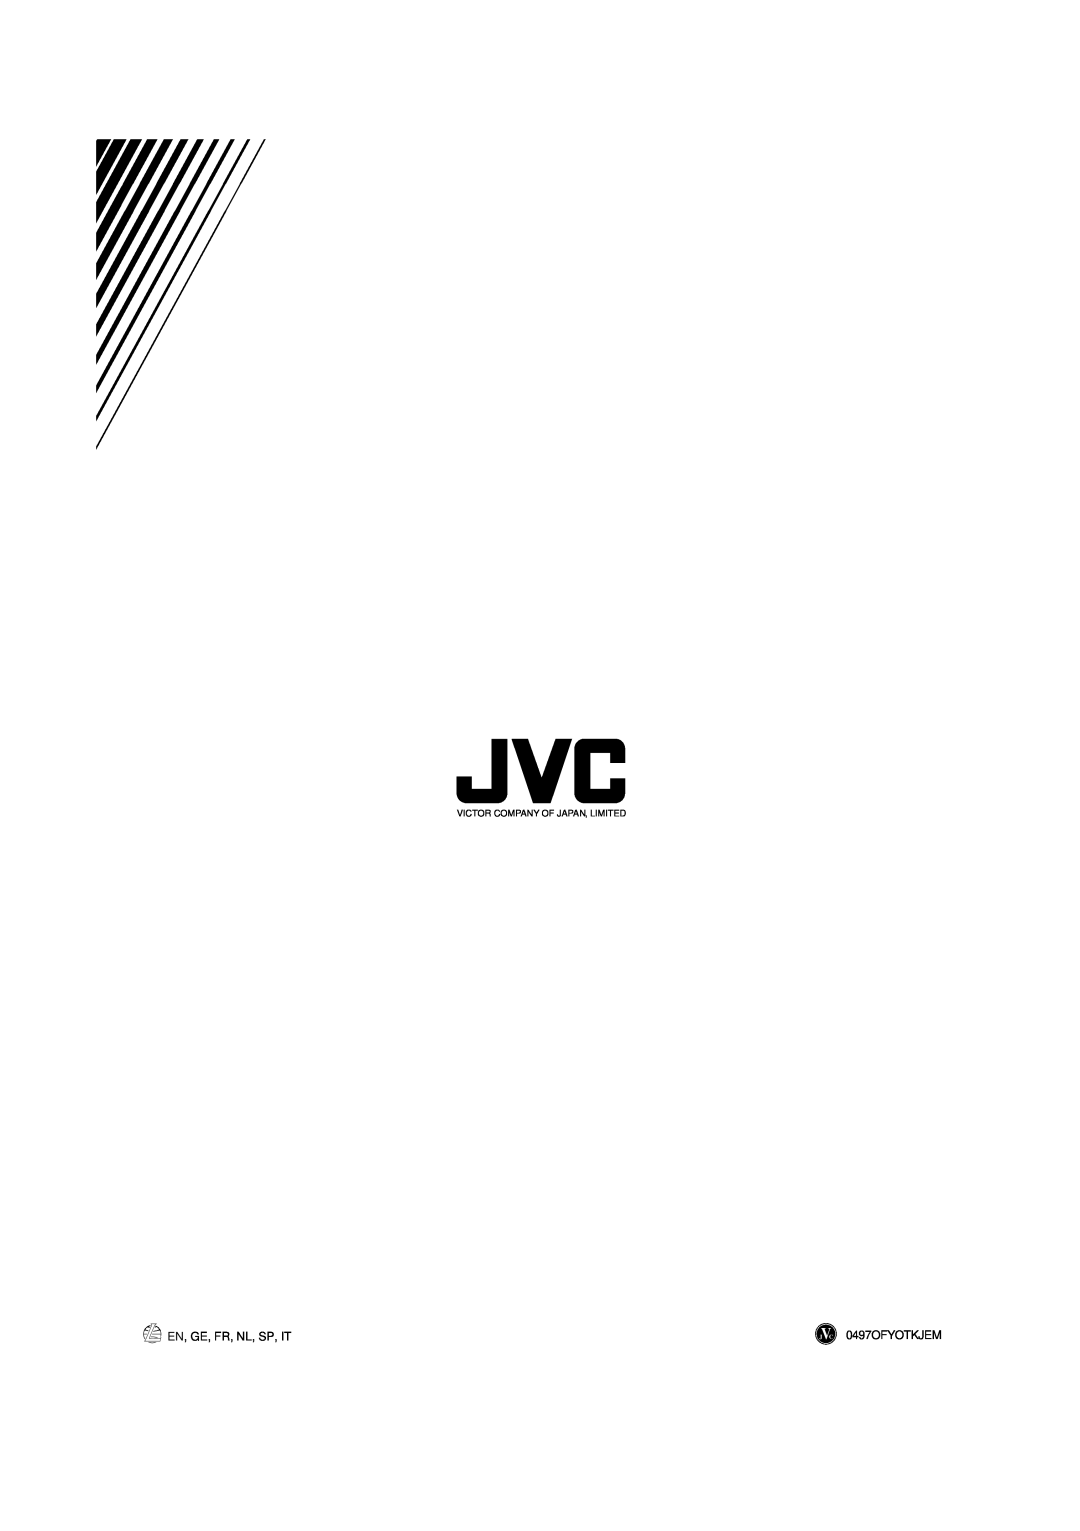 JVC AX-V5BK manual En, Ge, Fr, Nl, Sp, It, 0497OFYOTKJEM, Victor Company Of Japan, Limited 